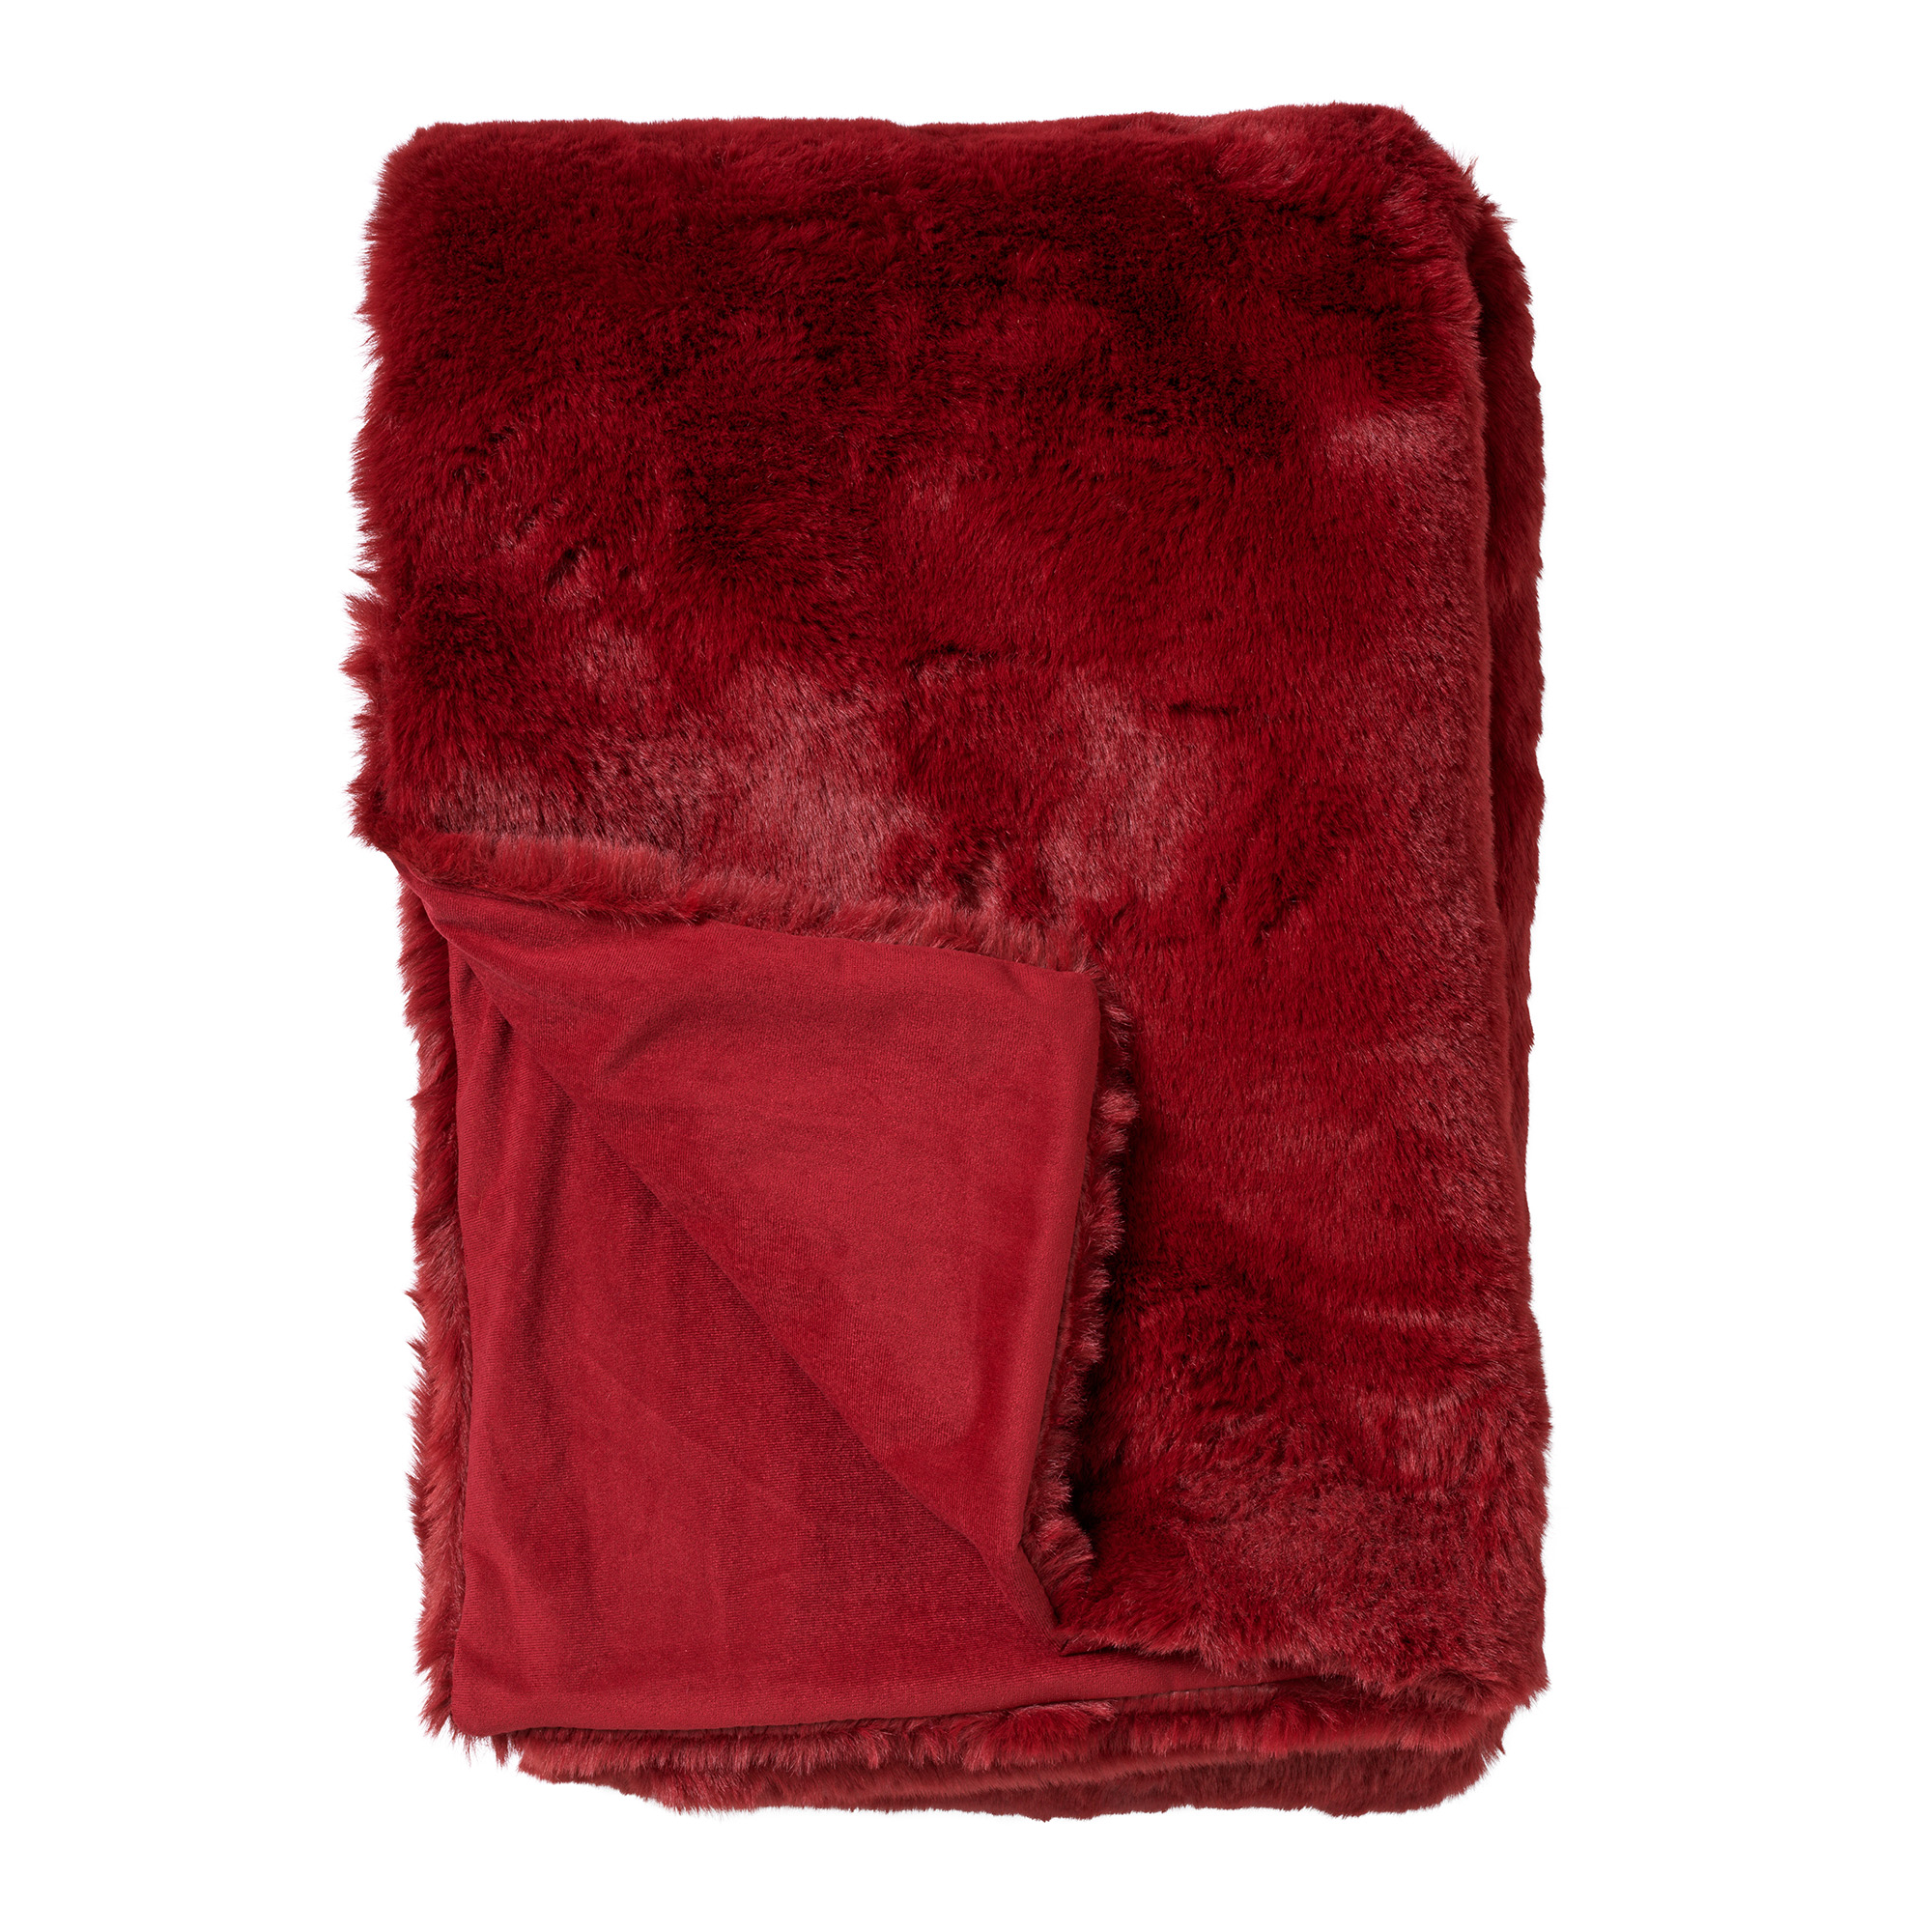 ZINZI - Plaid 140x180 cm - bontlook - effen kleur - Merlot - rood